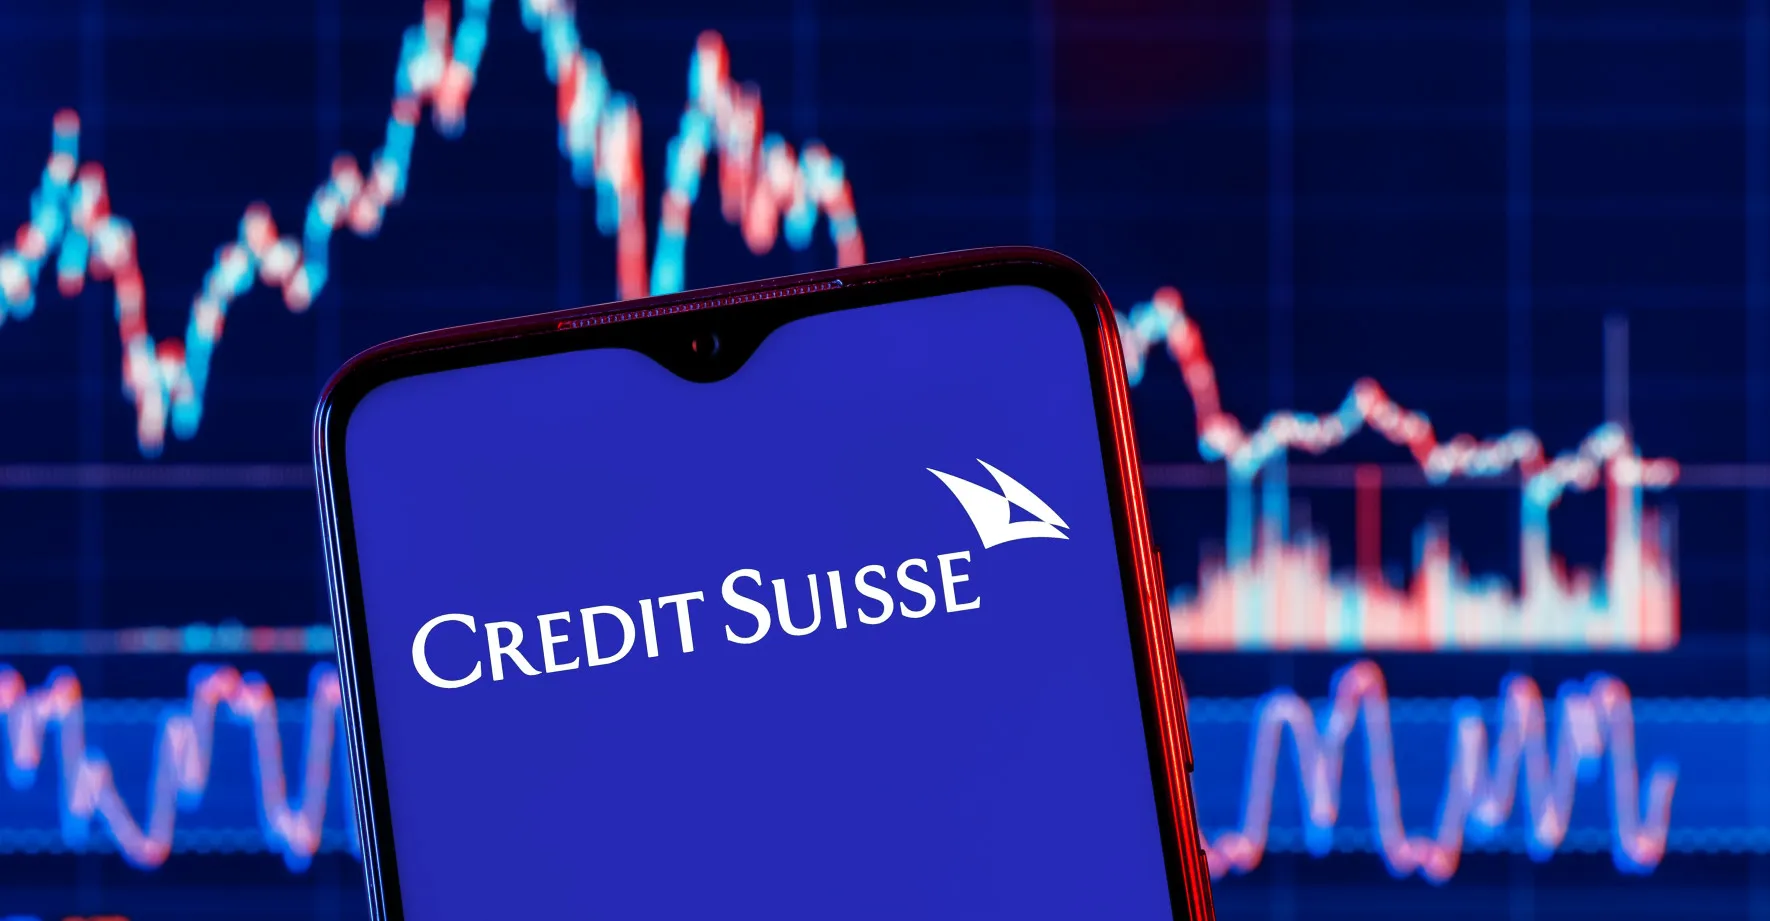 Záchrana banky bohatých: Credit Suisse spolkne rival, zaniknou tisíce míst